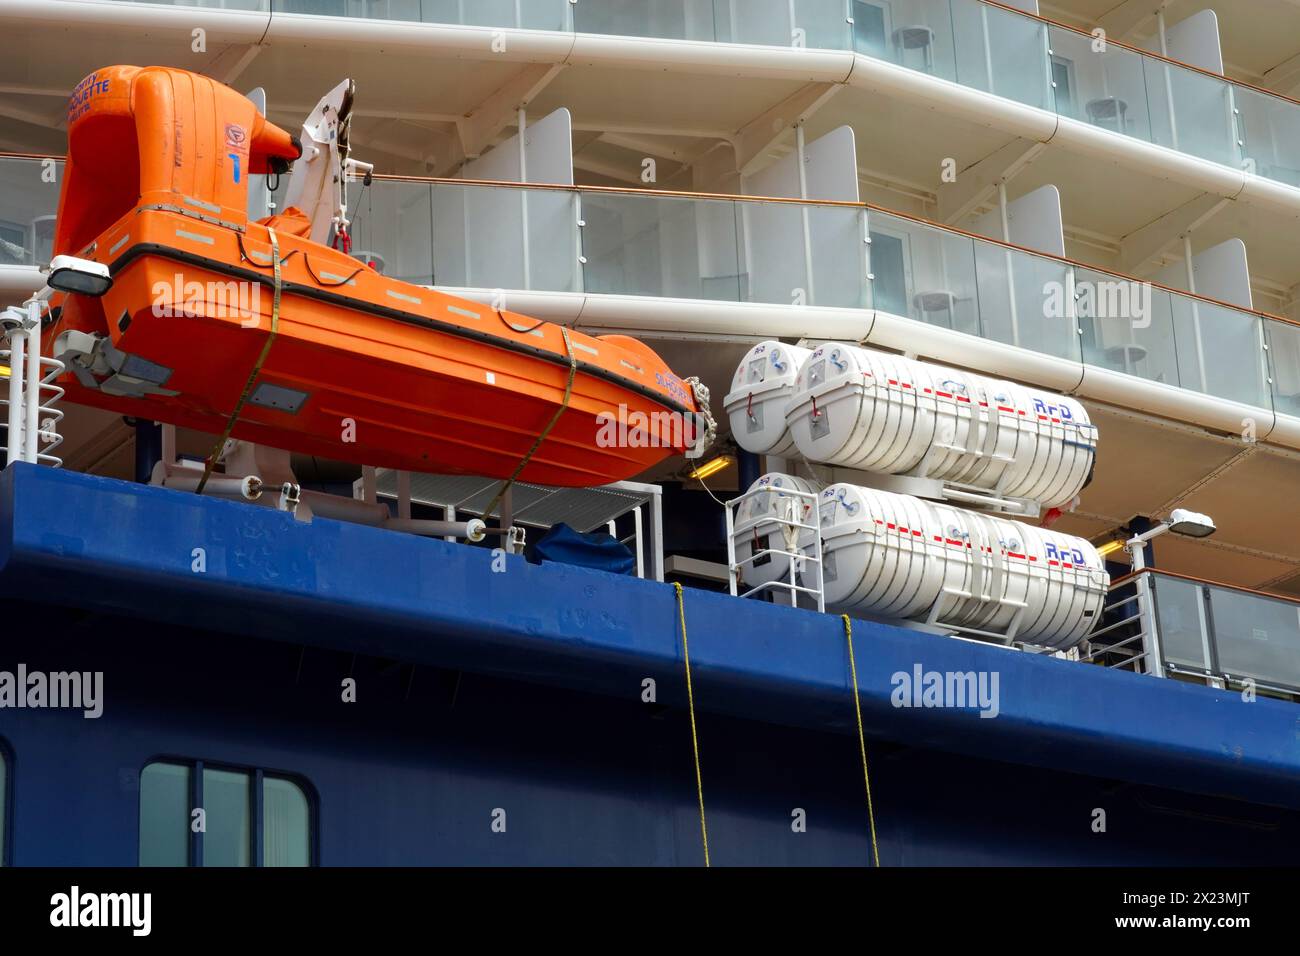 Bateau de sauvetage orange et radeaux de sauvetage blancs de bateau de croisière à passagers à coque bleue. Banque D'Images